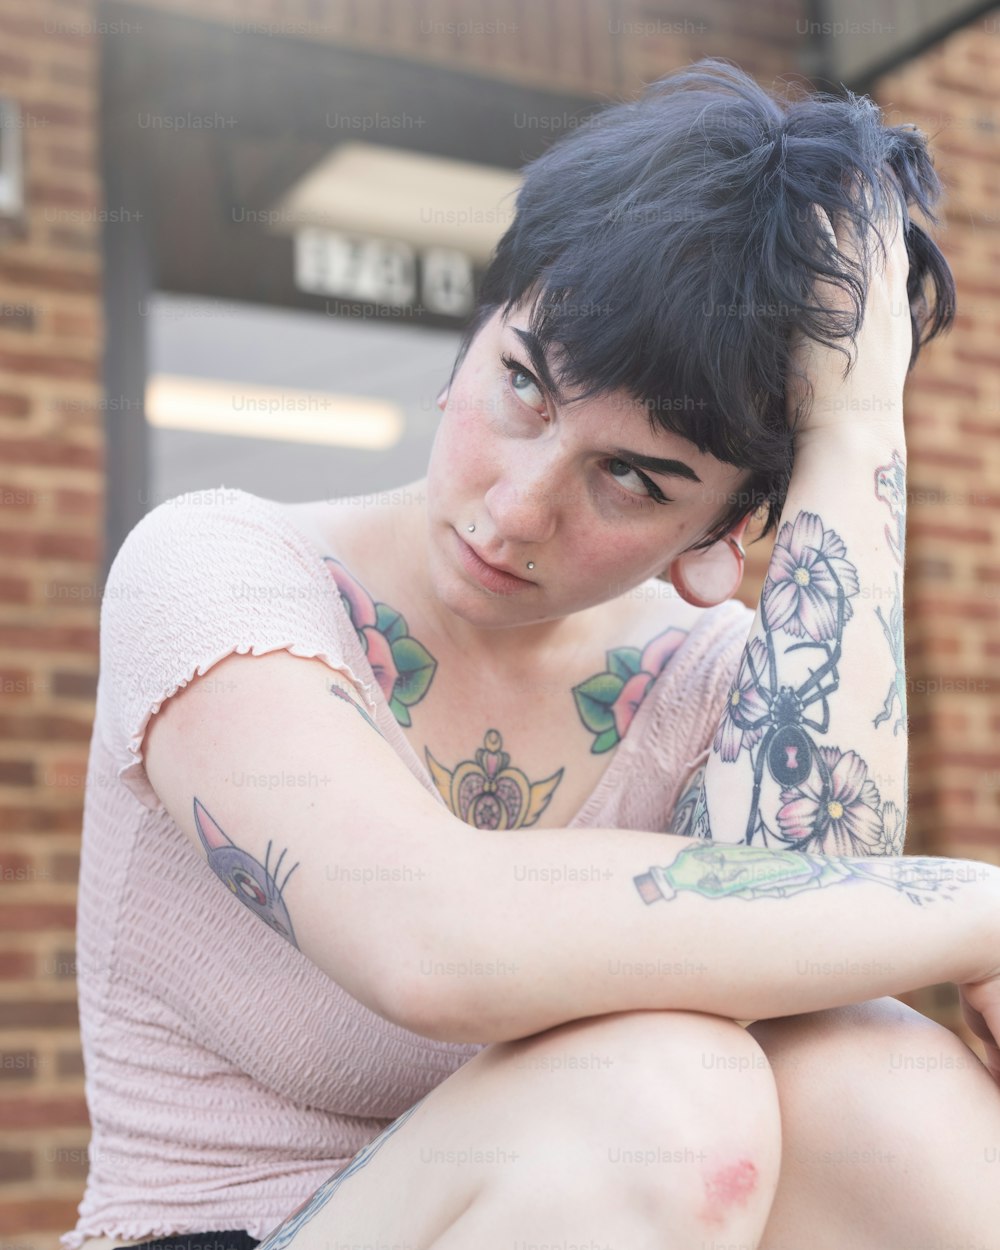 Una mujer con tatuajes sentada en un banco